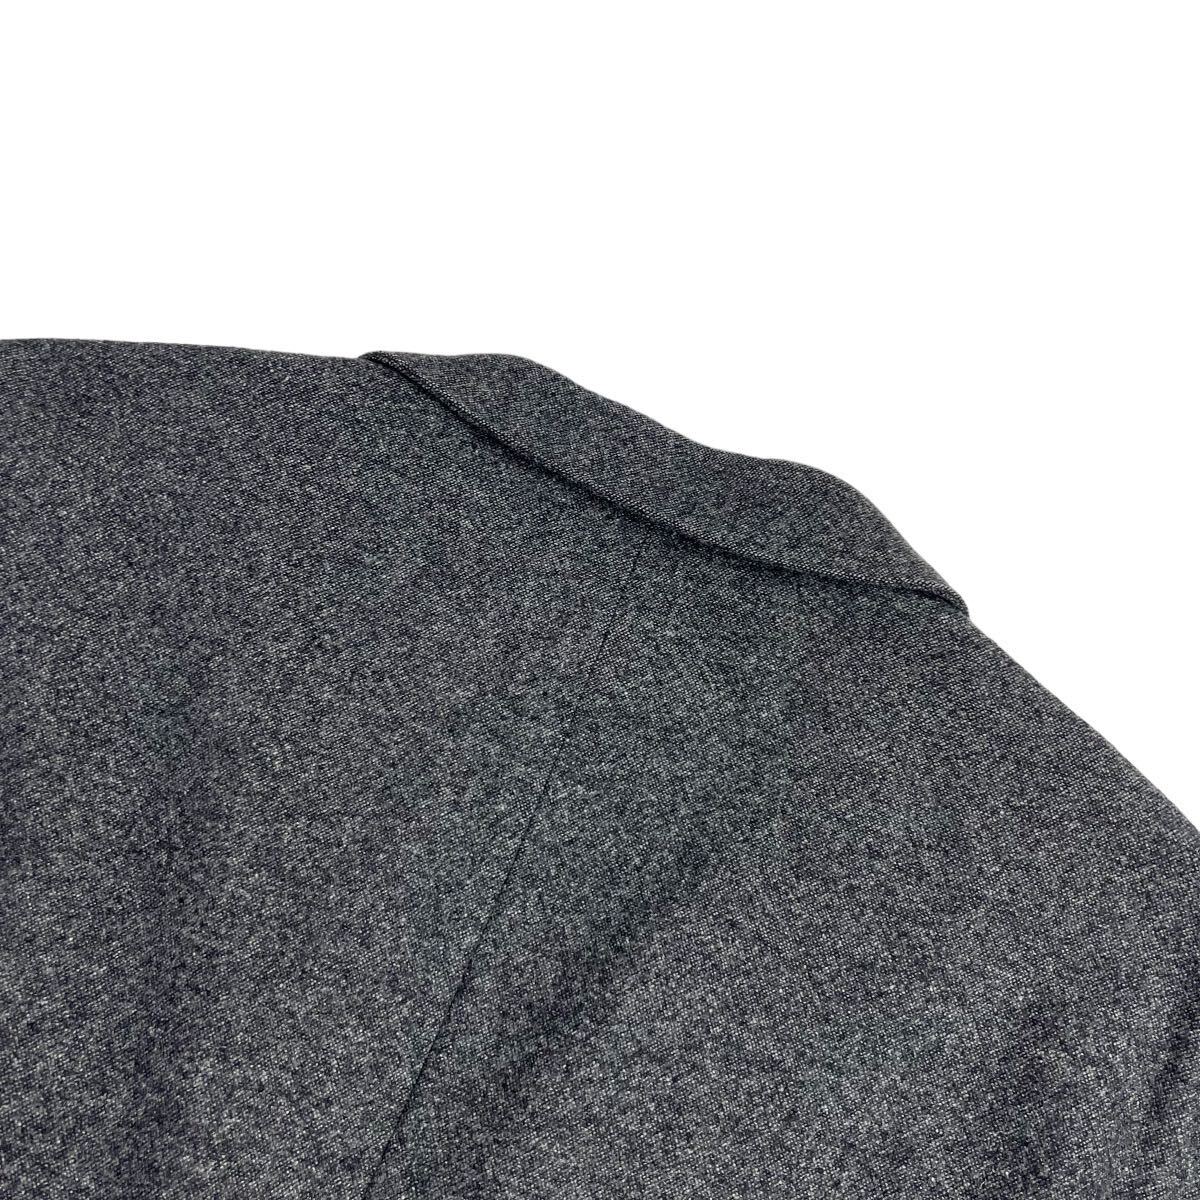  превосходный товар Paul Smith COLLECTION Paul Smith коллекция 2B tailored jacket размер M угольно-серый подкладка 2 цветный переключатель прекрасное качество A2440